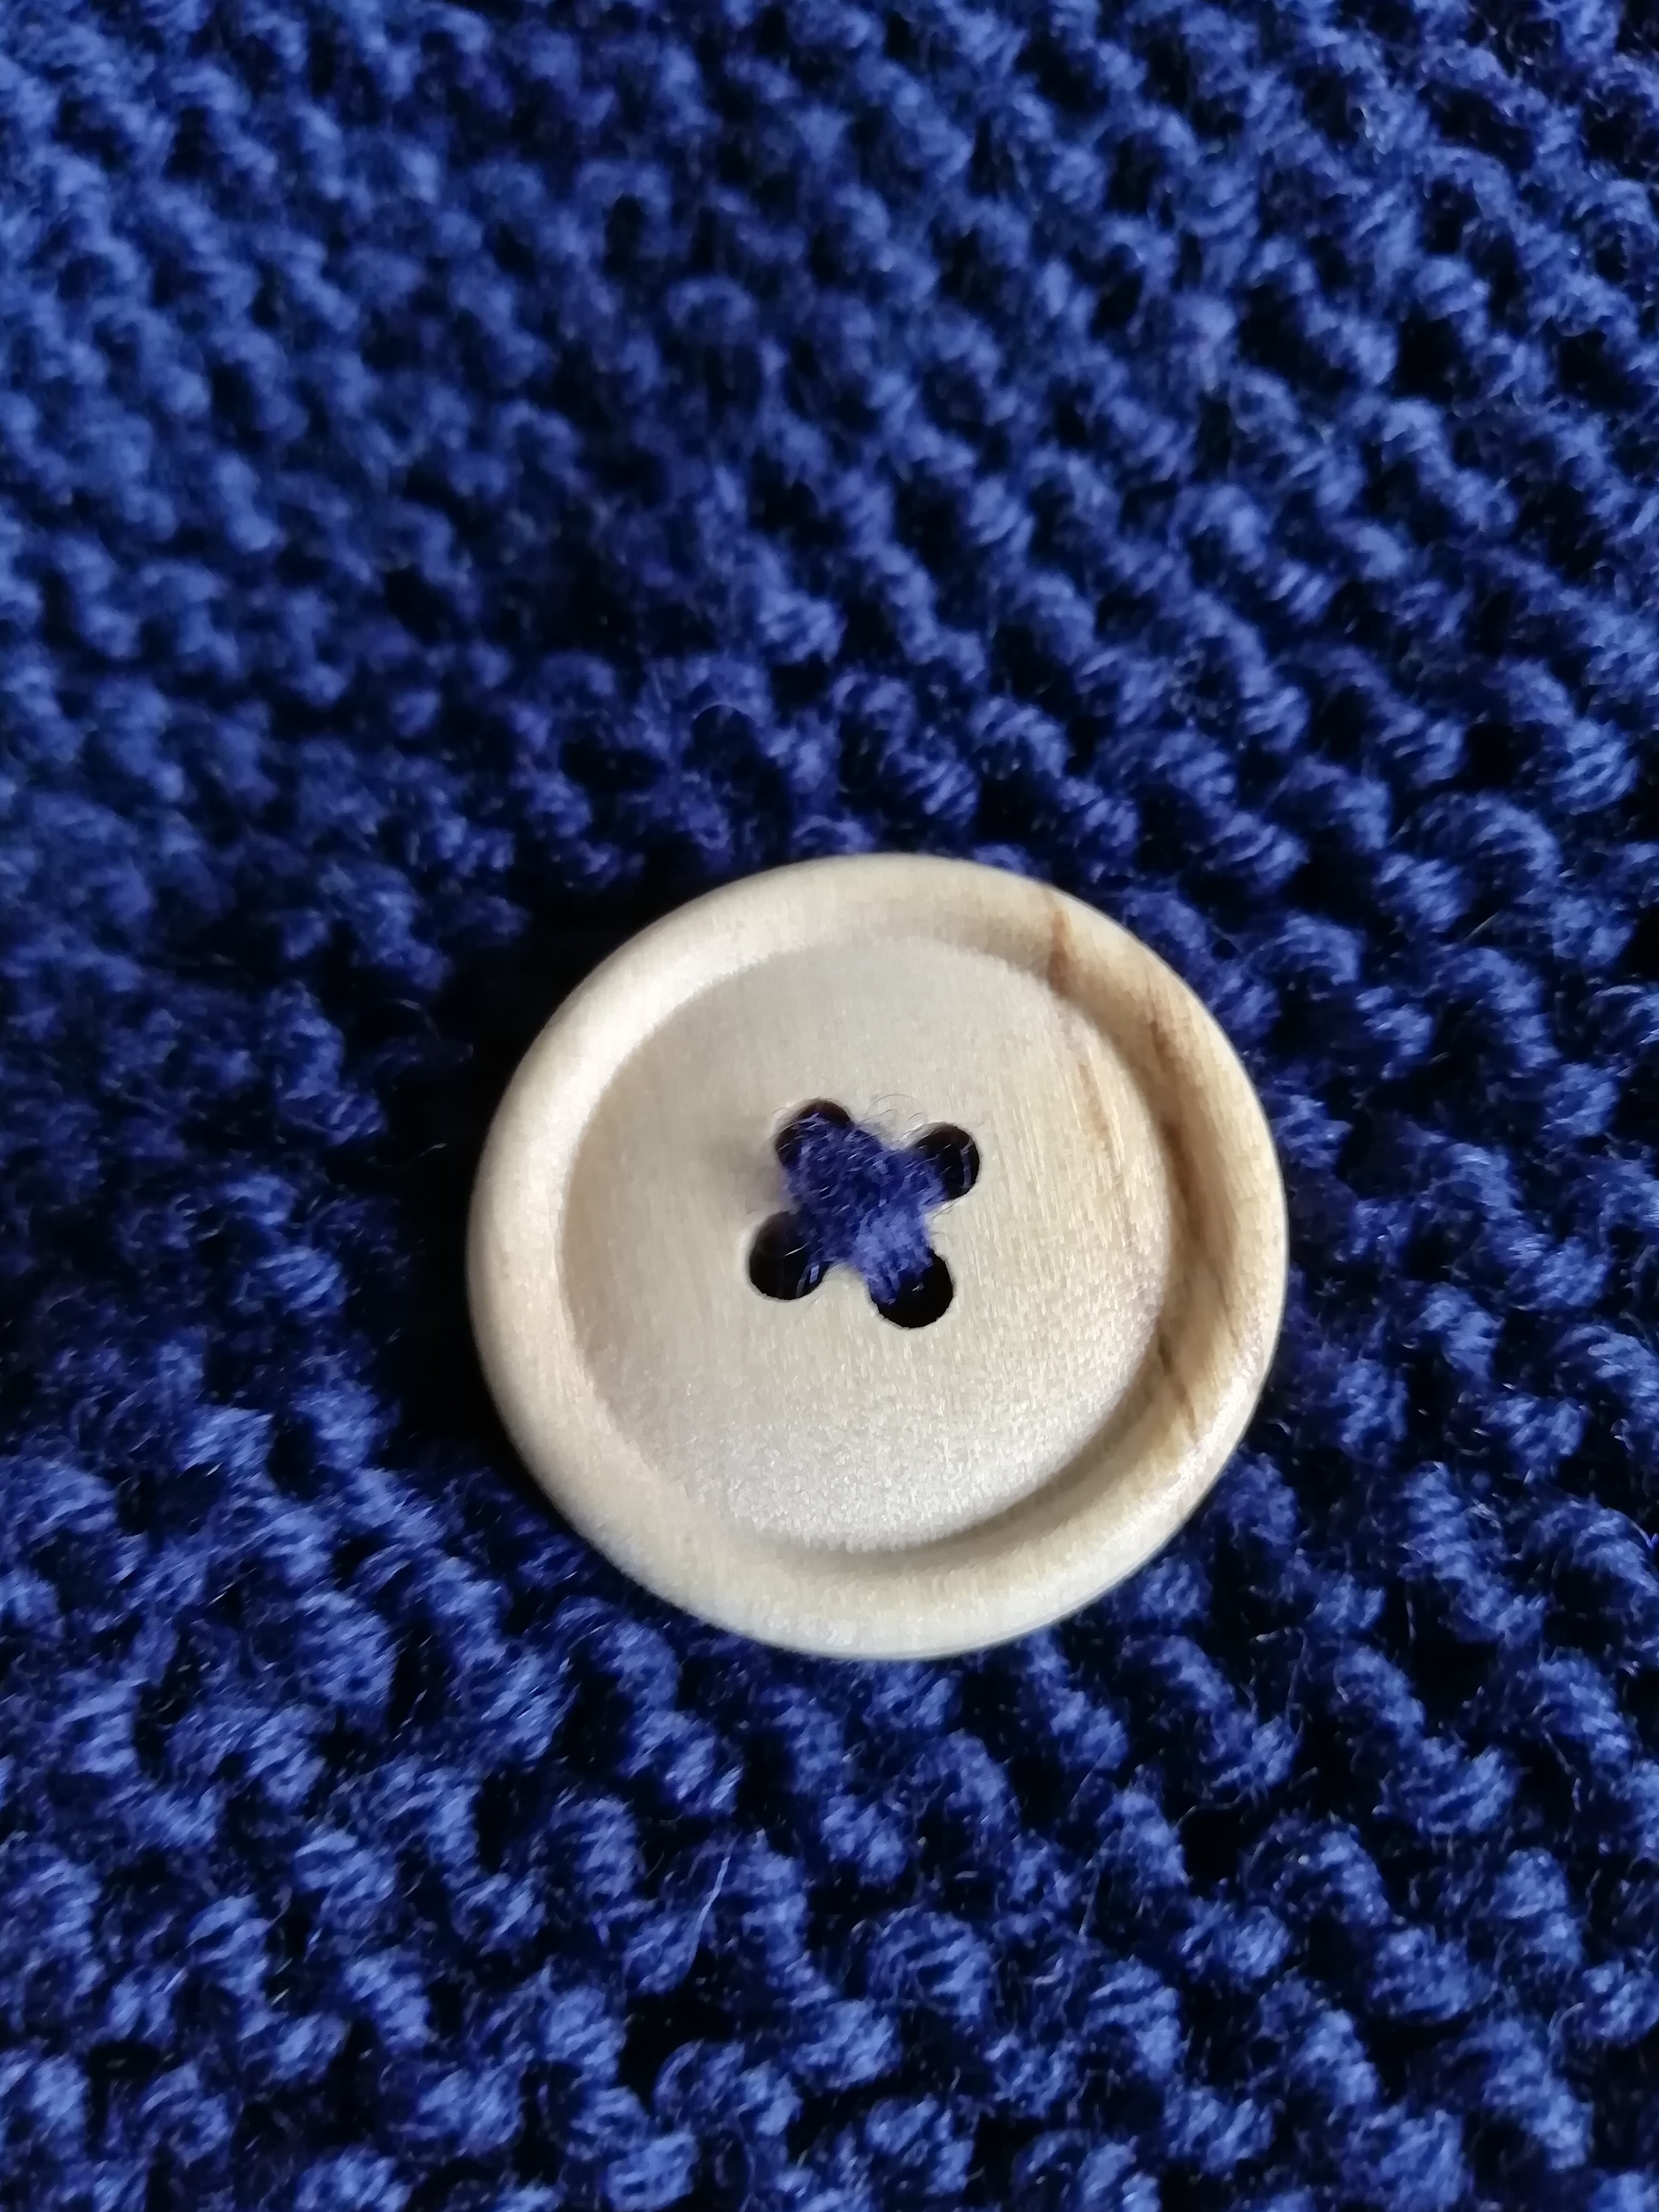 Wooden button against garter knitting